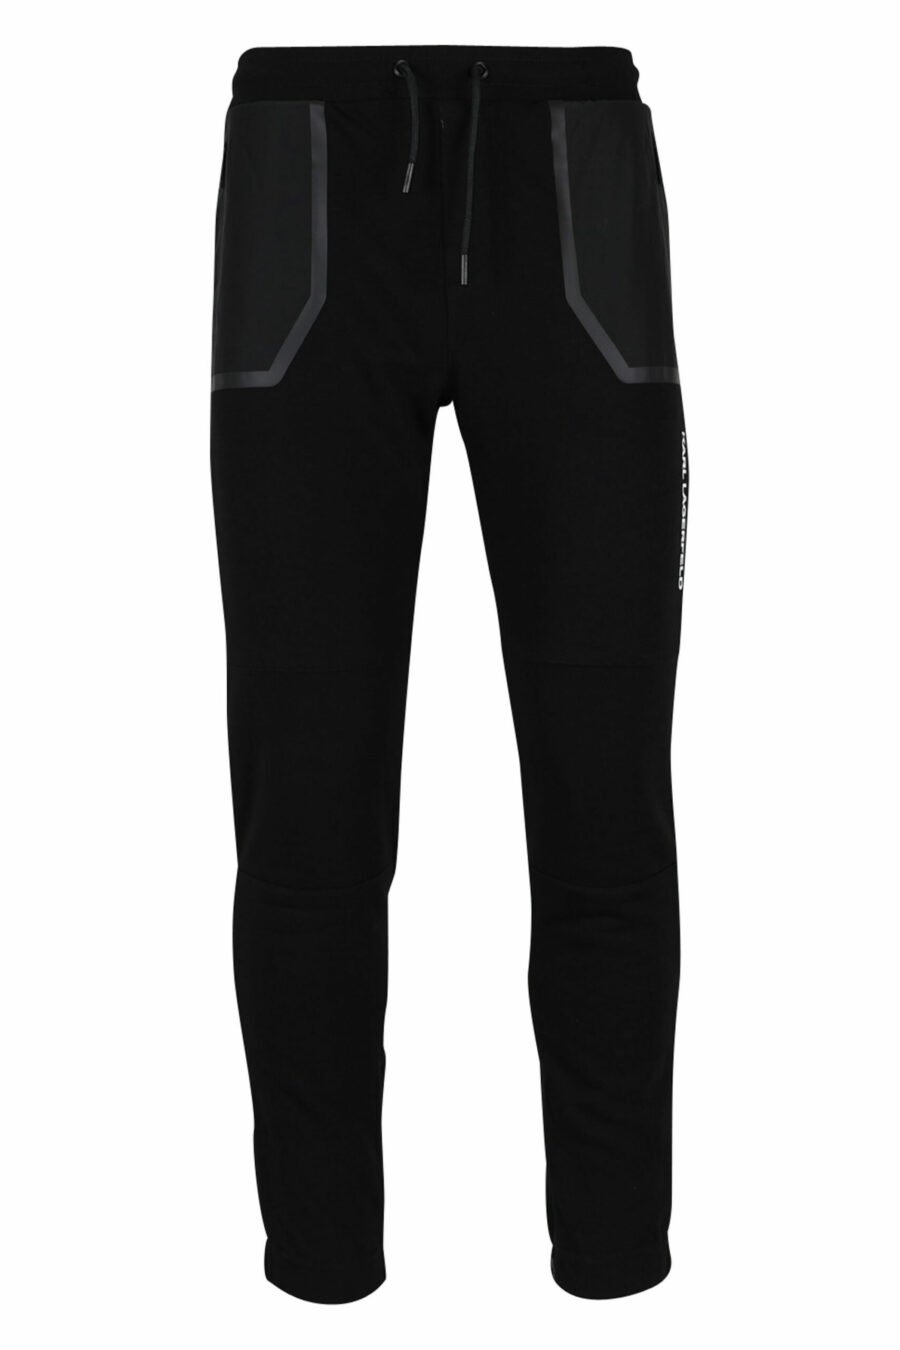 Pantalón de chándal negro con bolsillos de nilon - 4062226390132 scaled